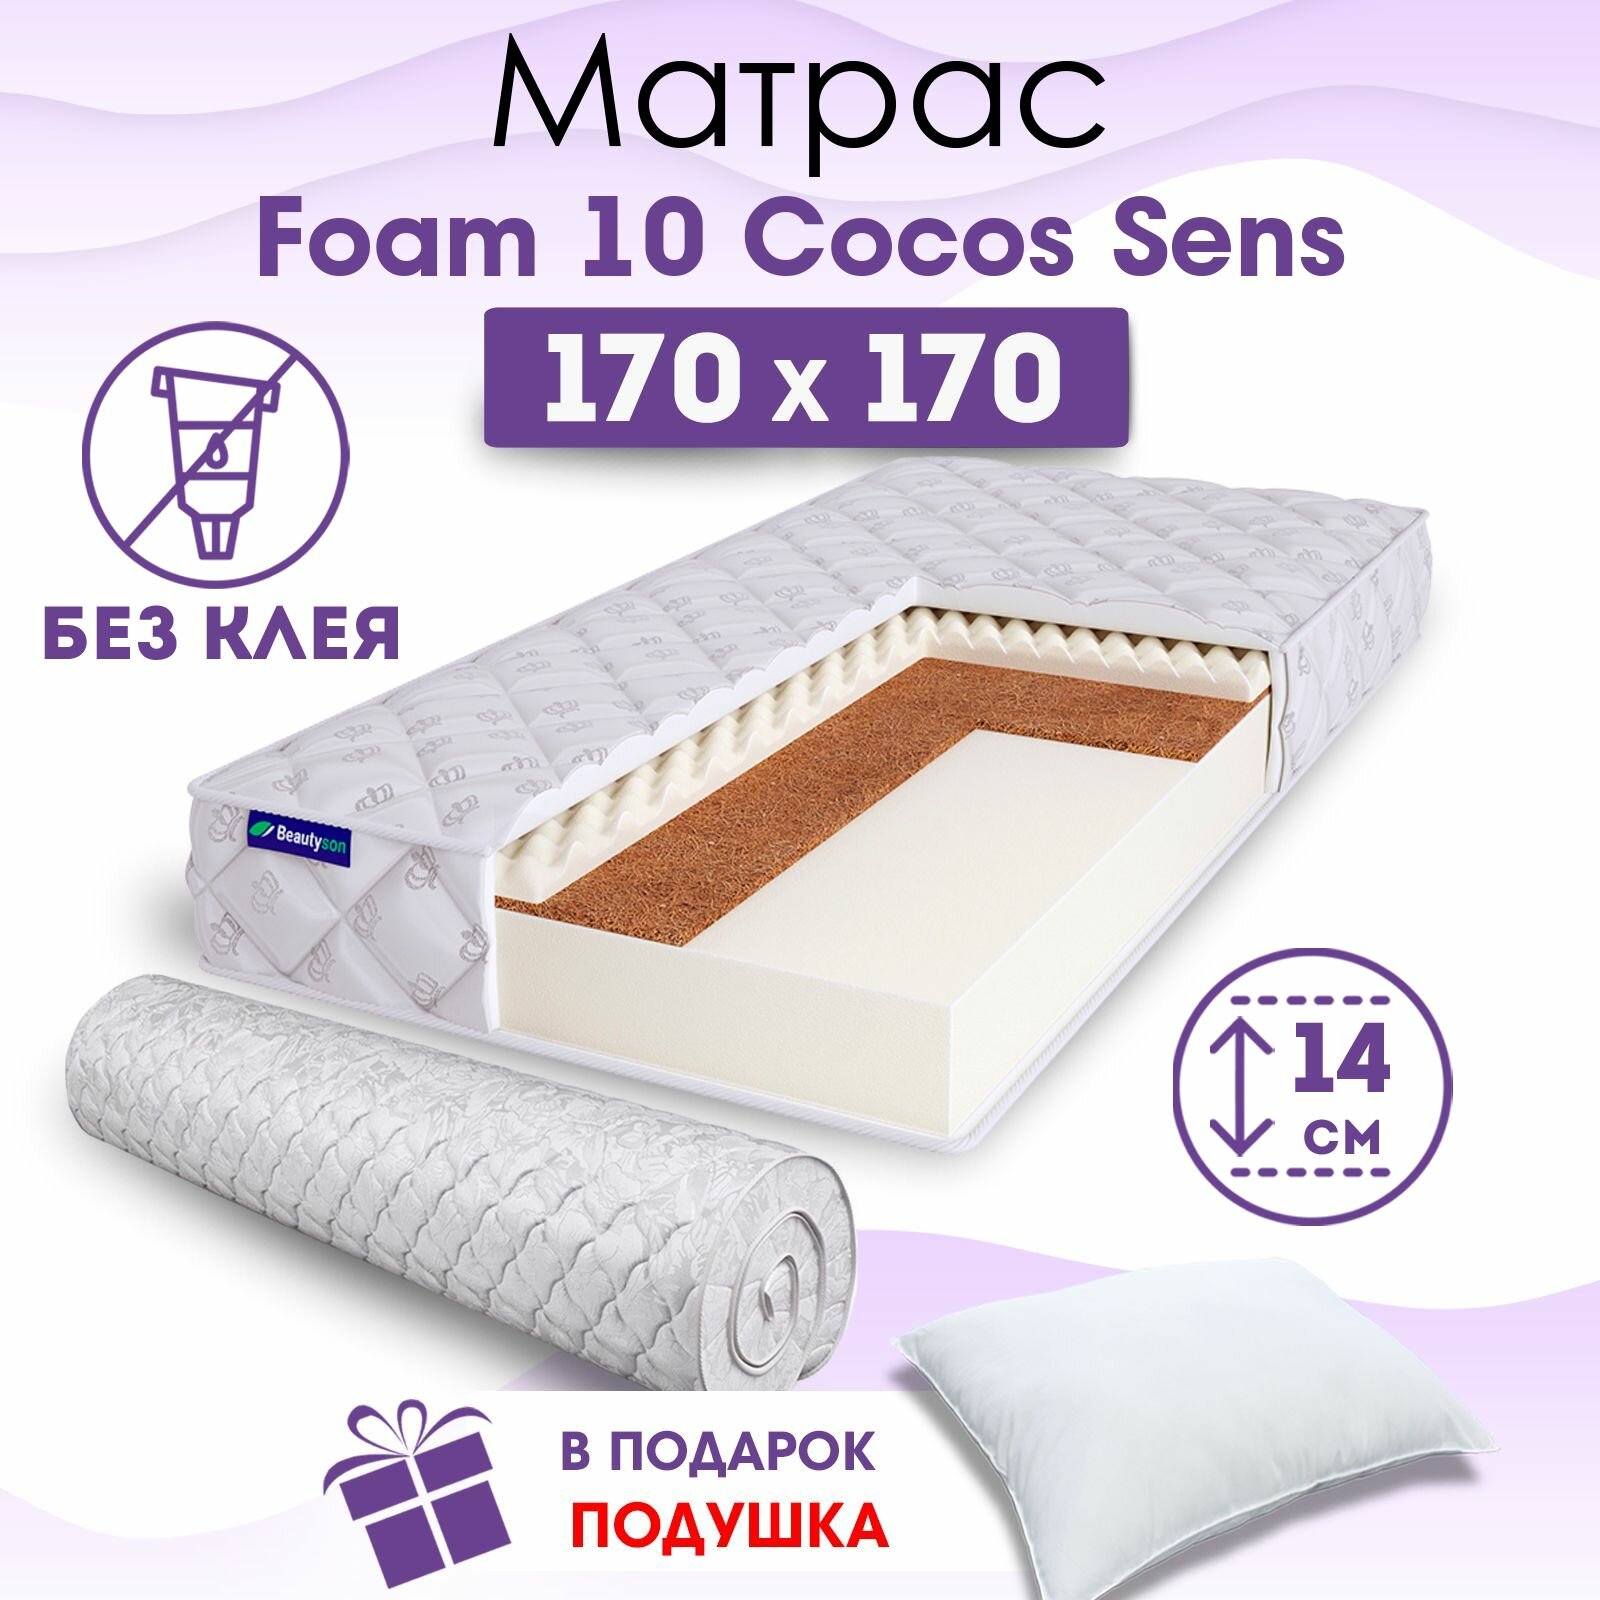 Ортопедический матрас Beautyson Foam 10 Cocos Sens без клея, 170х170, 14 см, беспружинный, двухспальный, на кровать, для дивана, умеренно мягкий